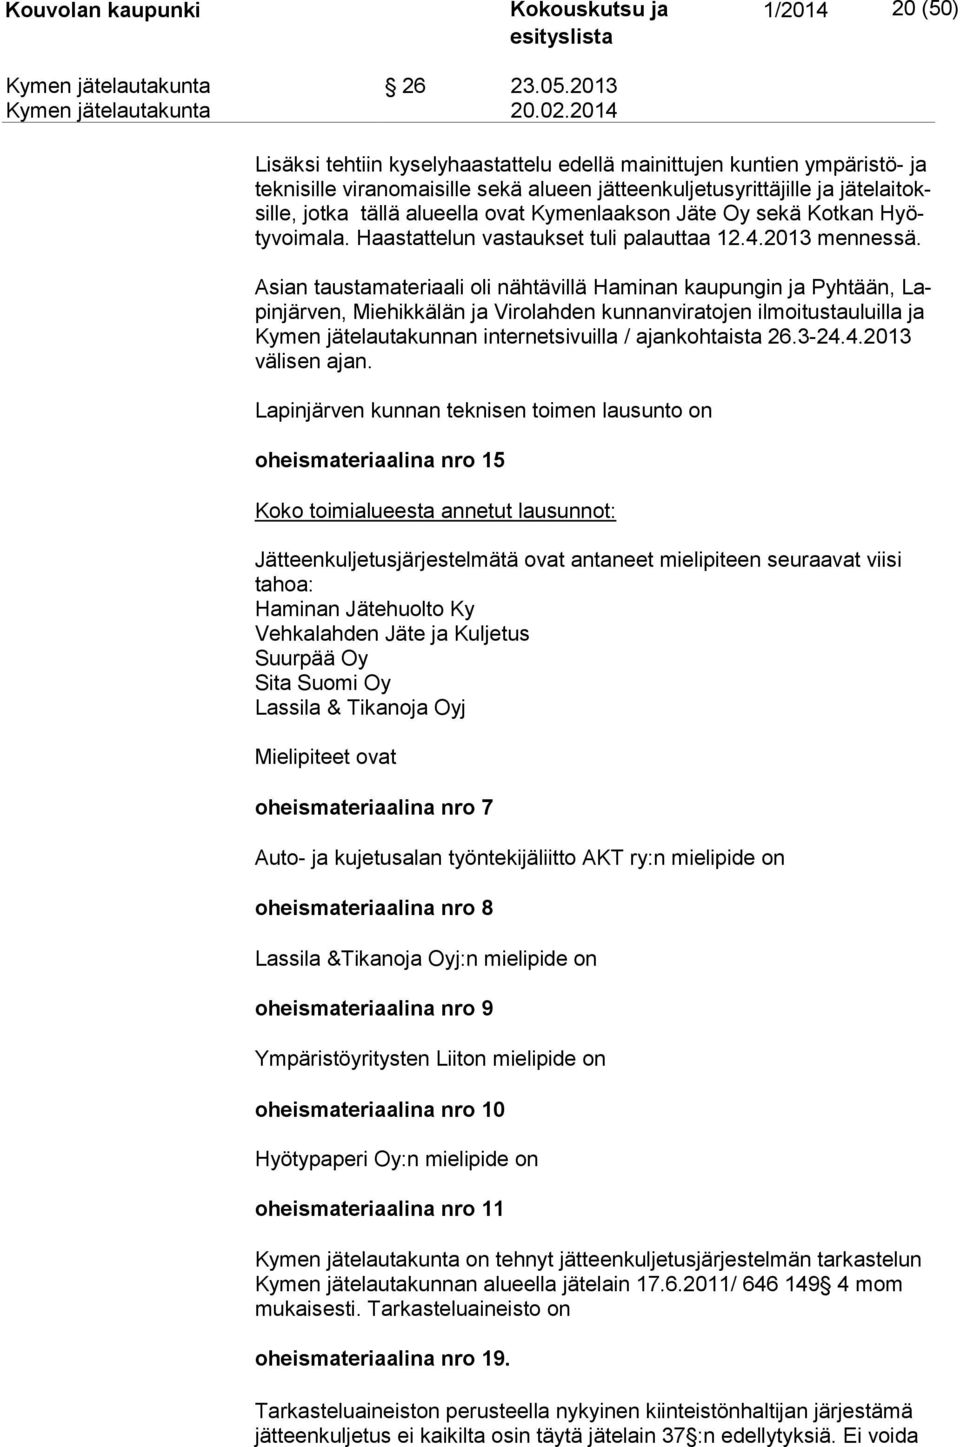 Kymenlaakson Jäte Oy sekä Kotkan Hyöty voi ma la. Haastattelun vastaukset tuli palauttaa 12.4.2013 mennessä.